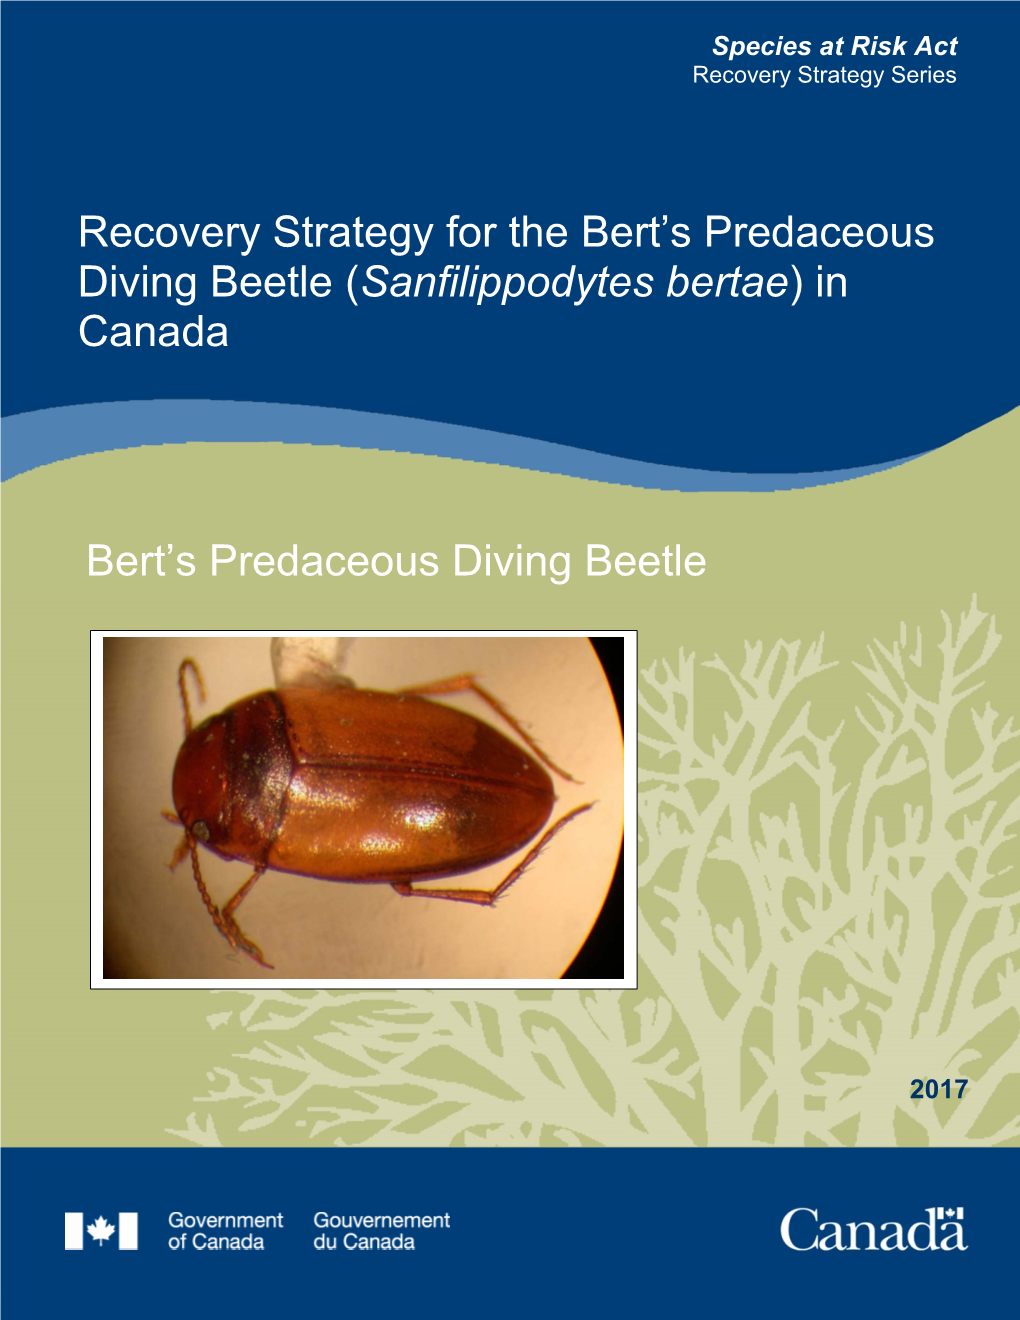 Bert's Predaceous Diving Beetle (Sanfilippodytes Bertae)